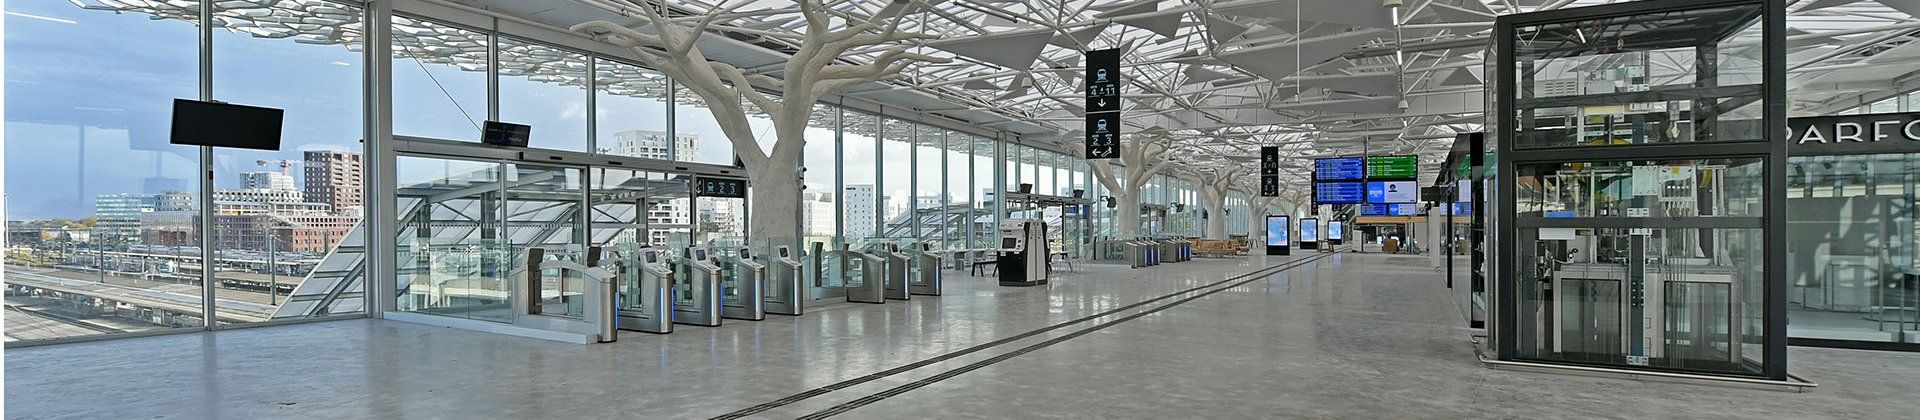 Vue panoramique de l'intérieur de la mezzanine de la gare de Nantes